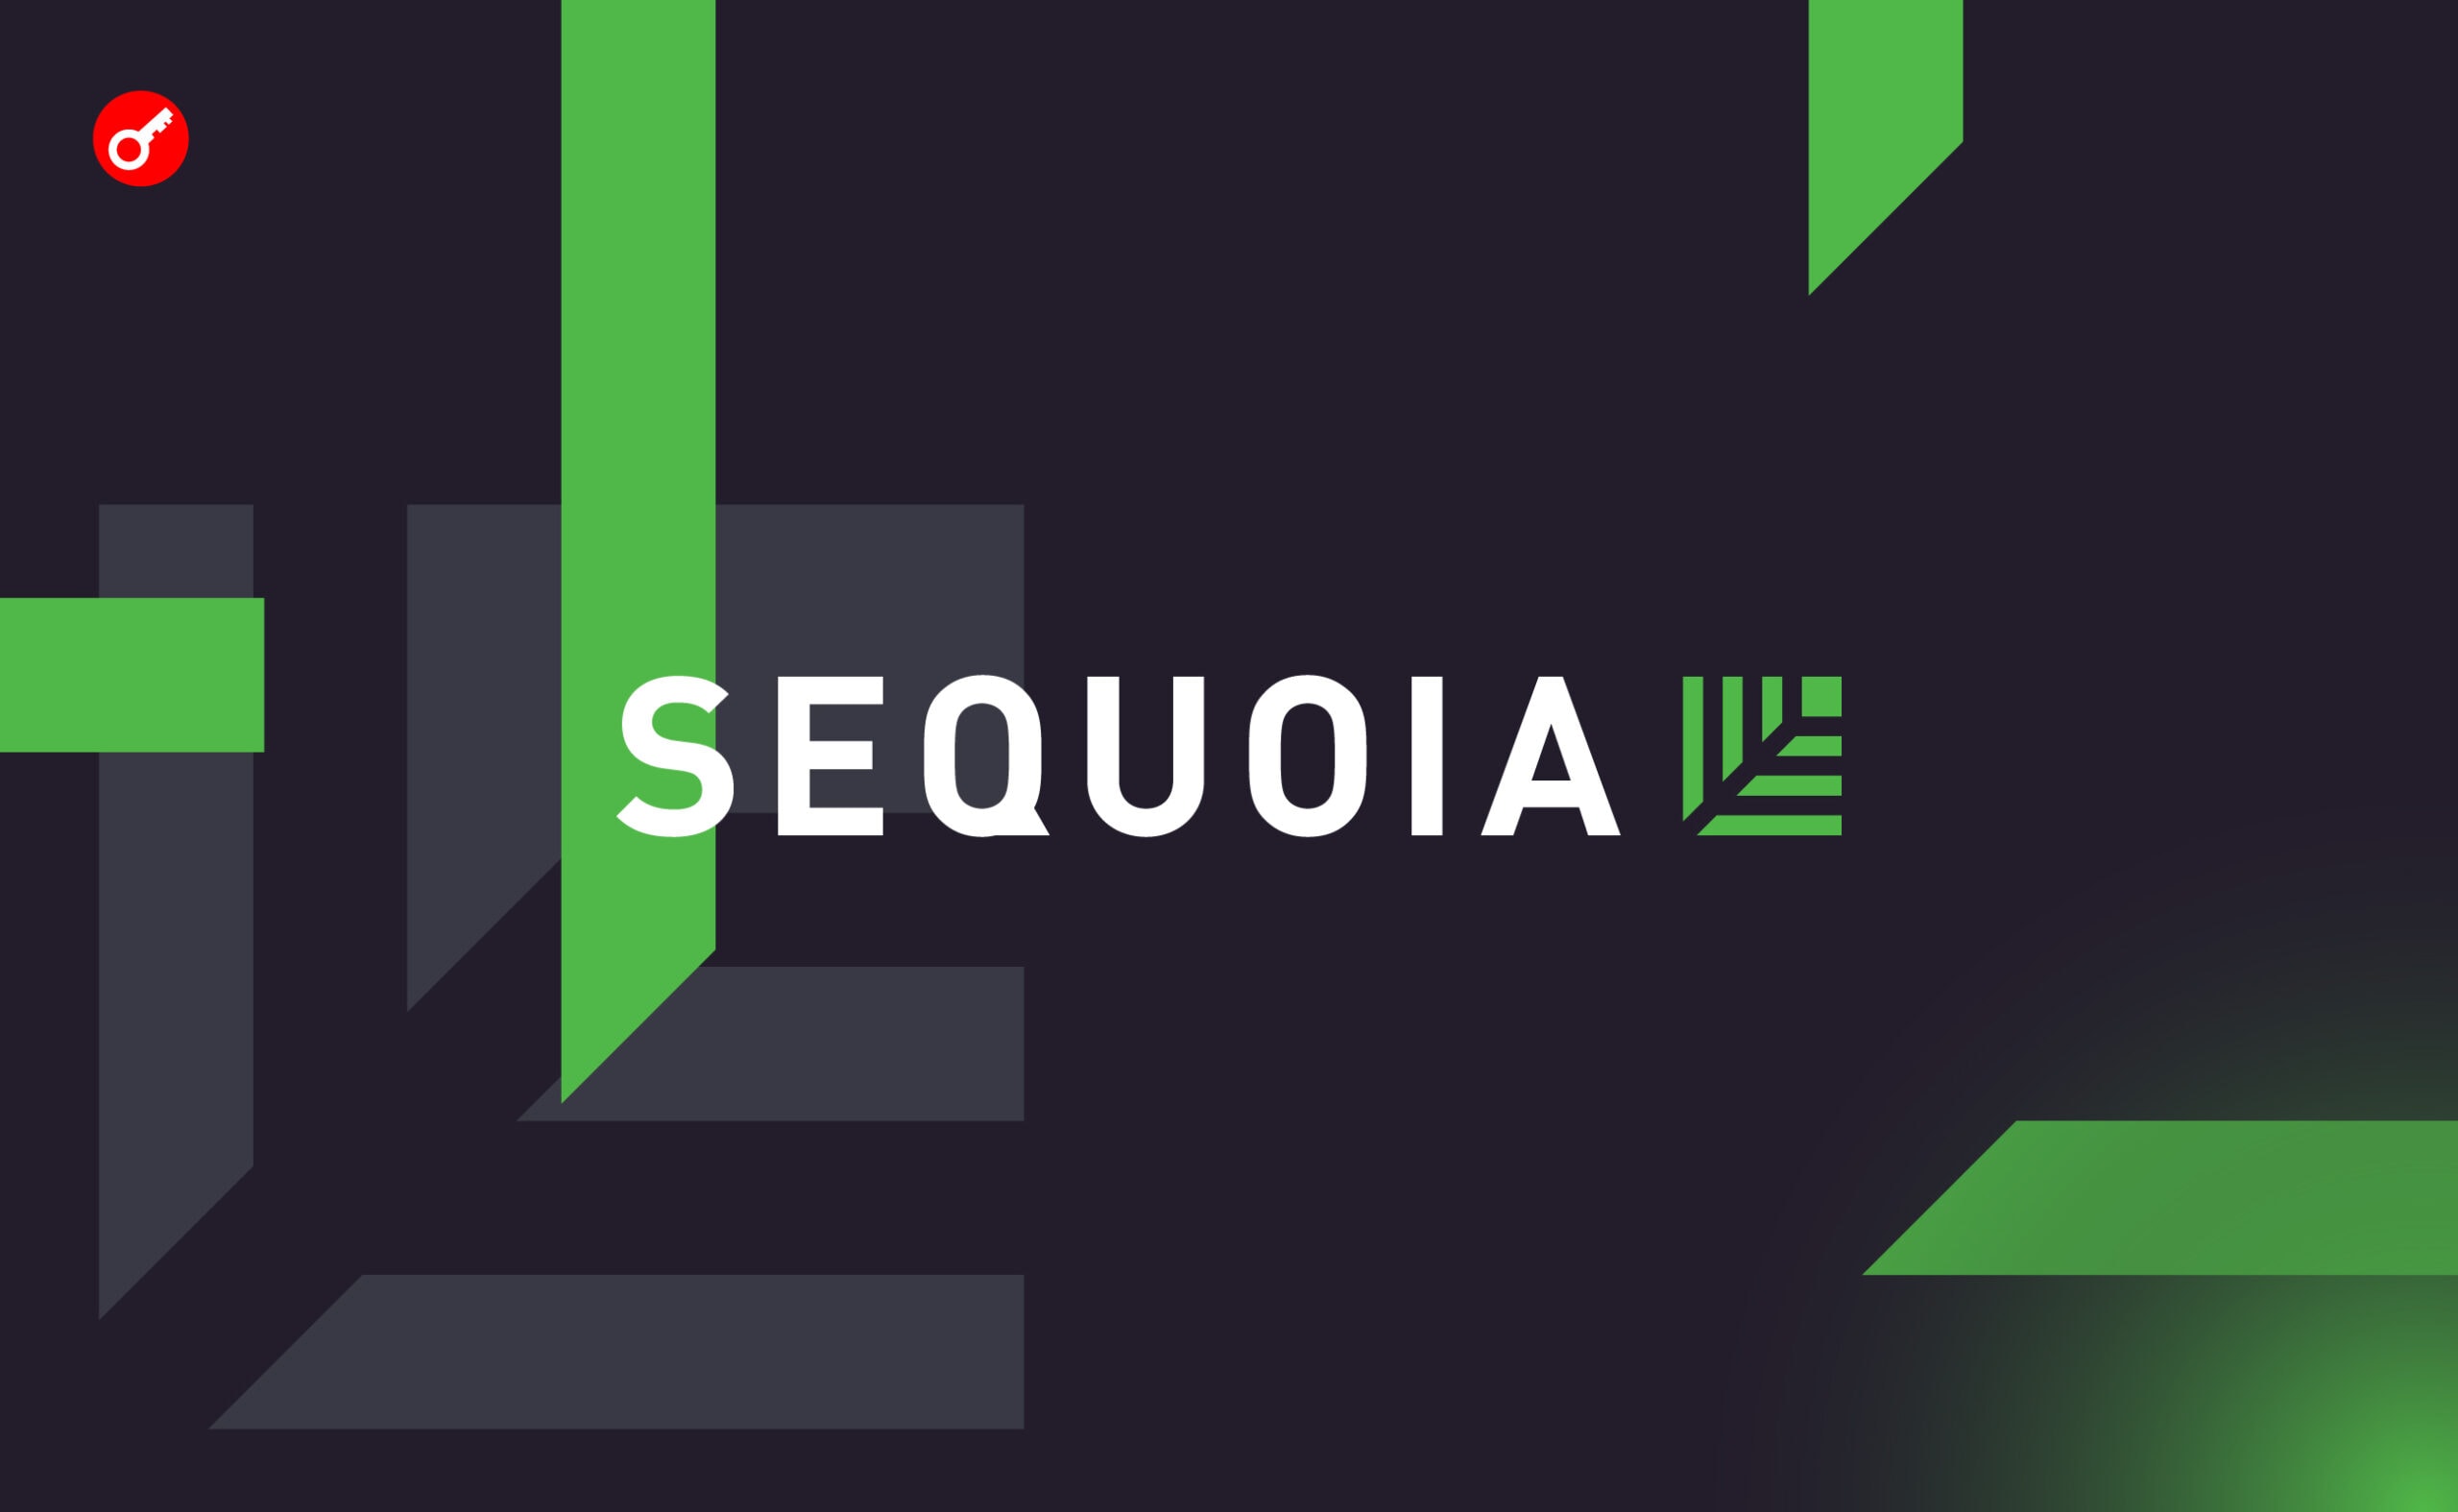 Sequoia втратила п’ять ключових партнерів. Головний колаж новини.